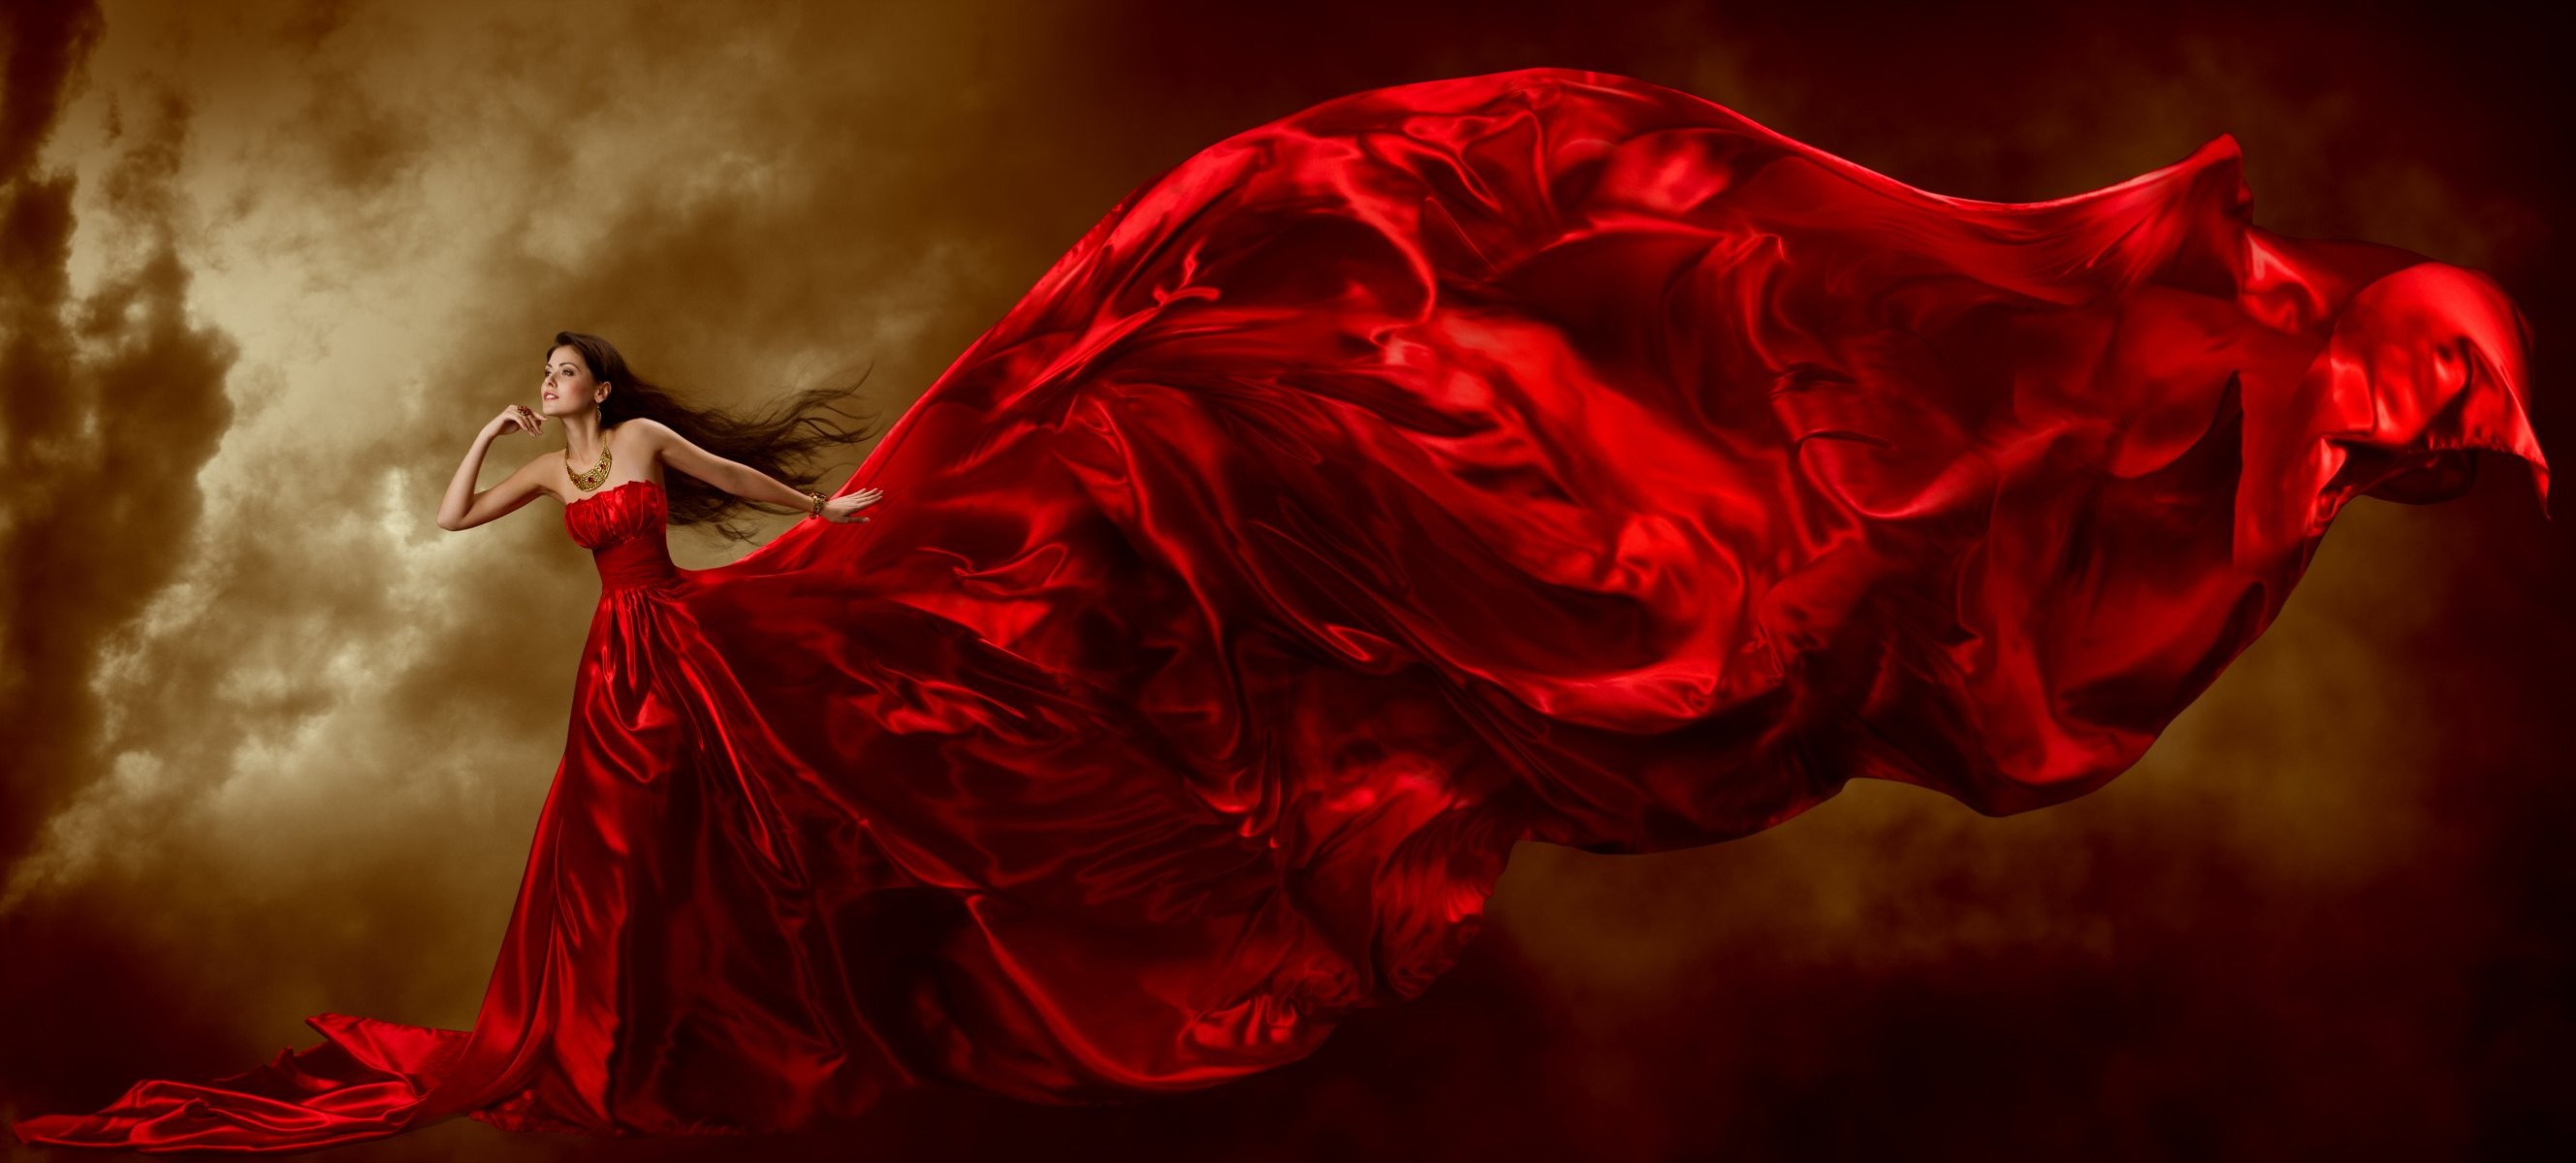 Фото Девушка в длинном красном развевающемся платье, фотограф Inara Prusakova